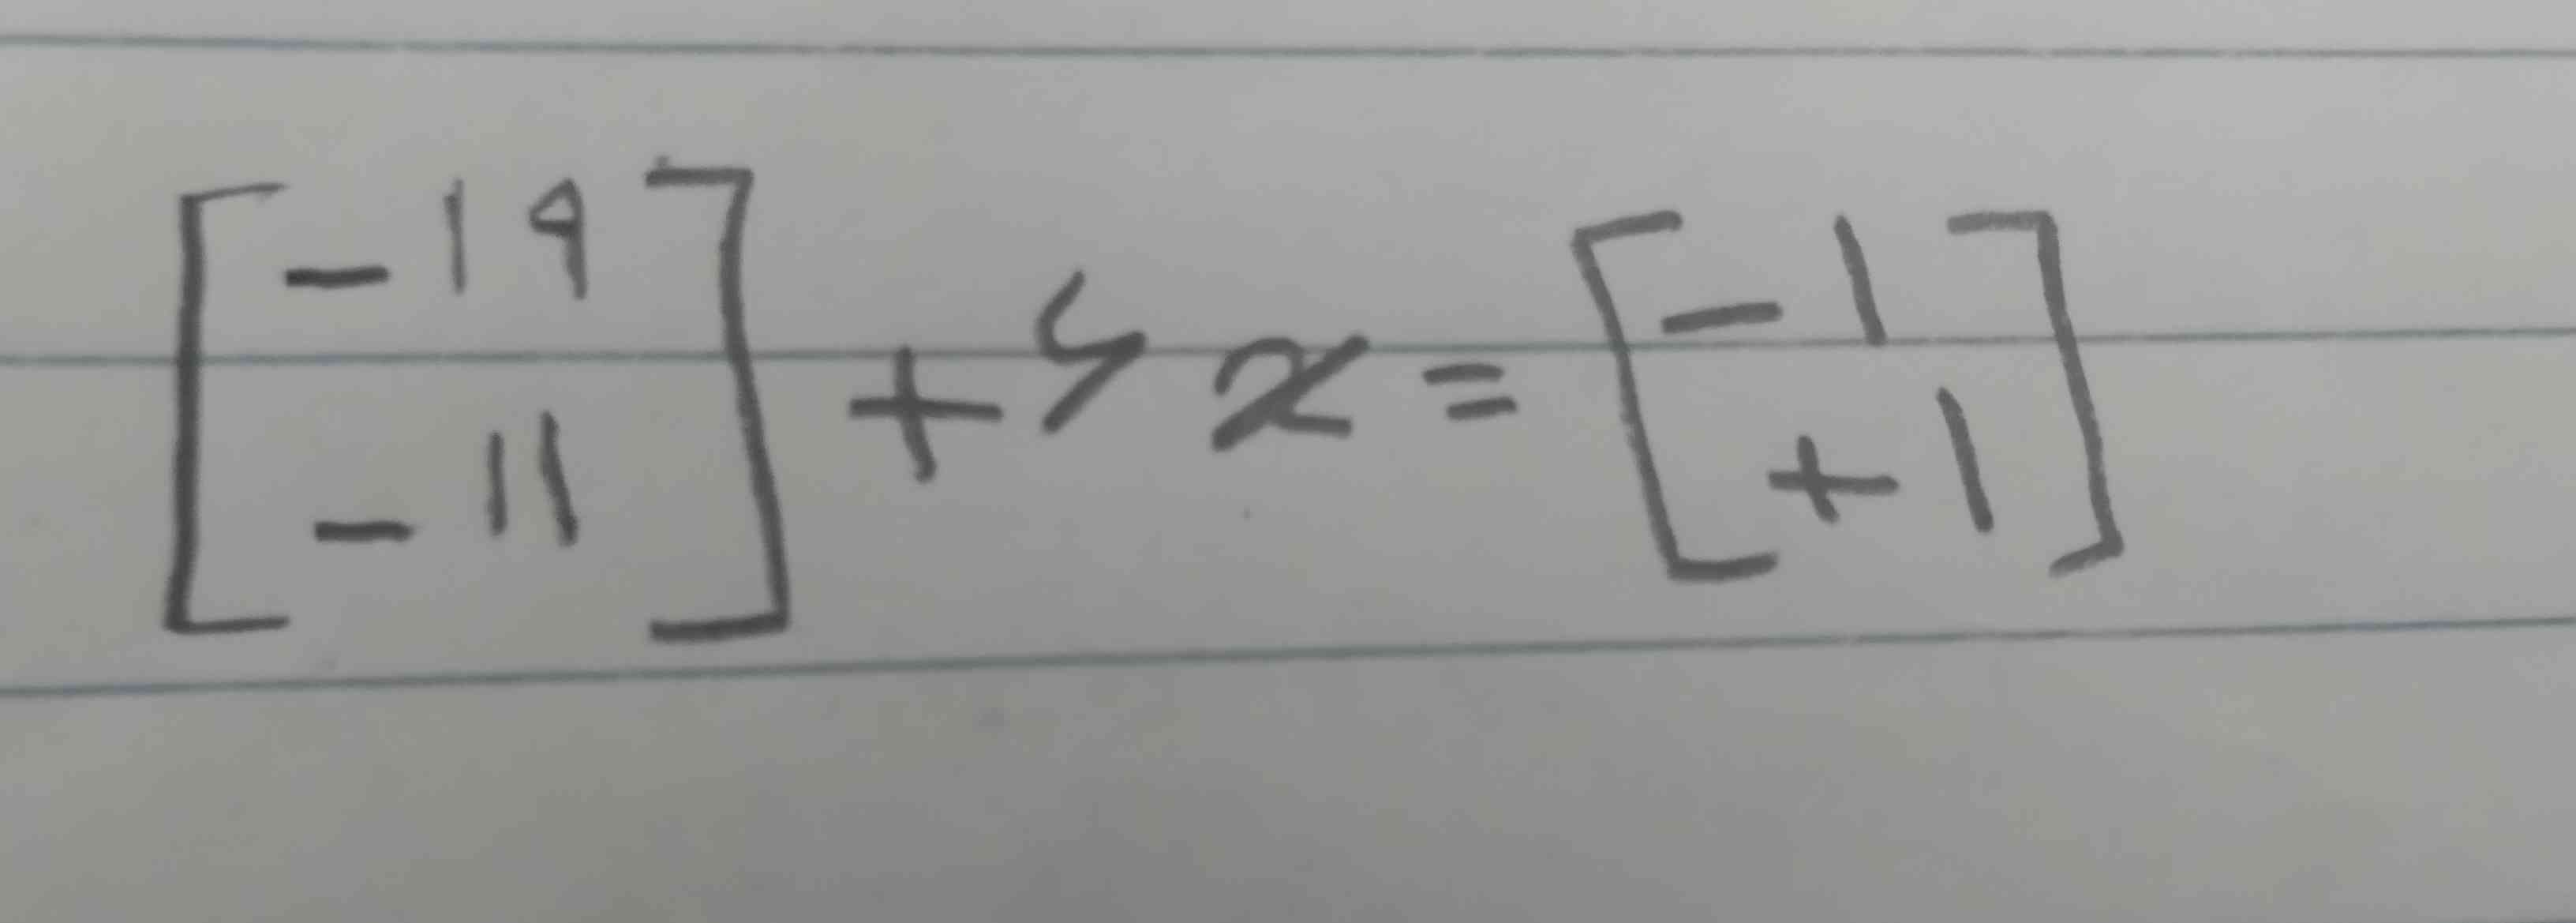 معادله مختصاتی زیر را حل کنید(لطفاً بفرستید تاج میدم:))